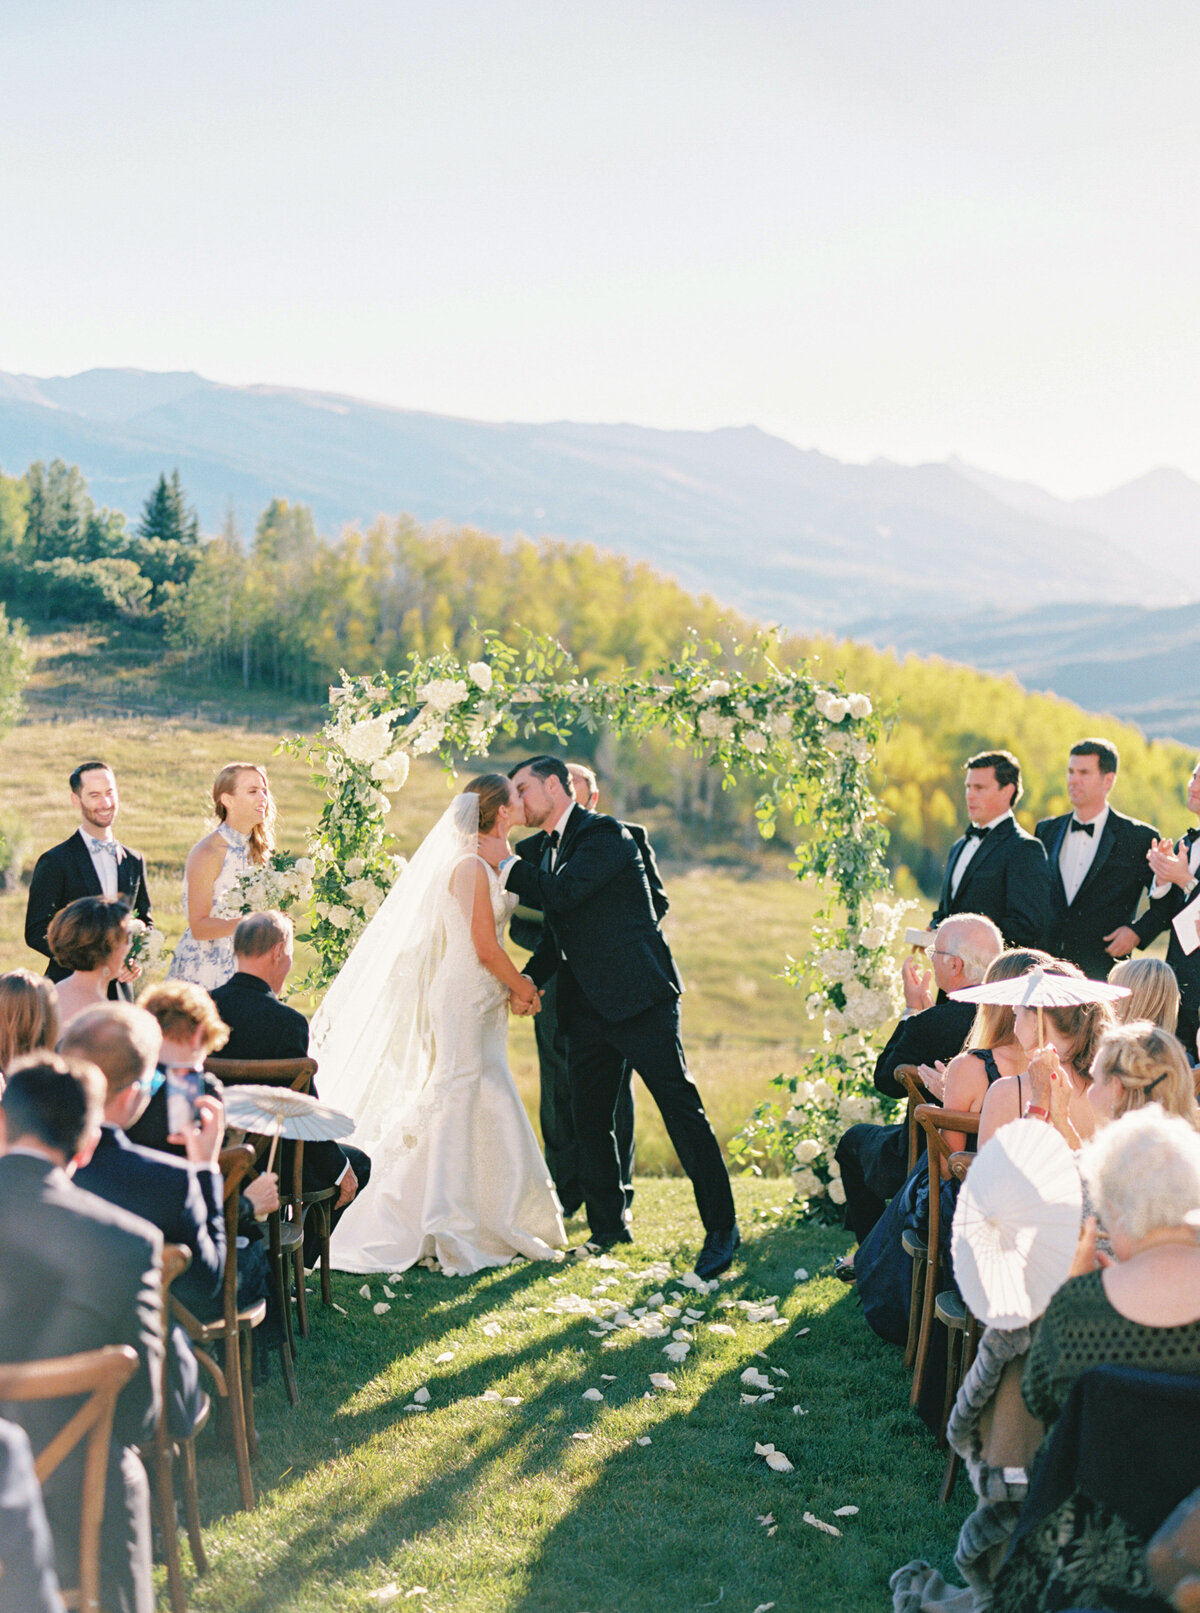 Ceremony kiss in Aspen